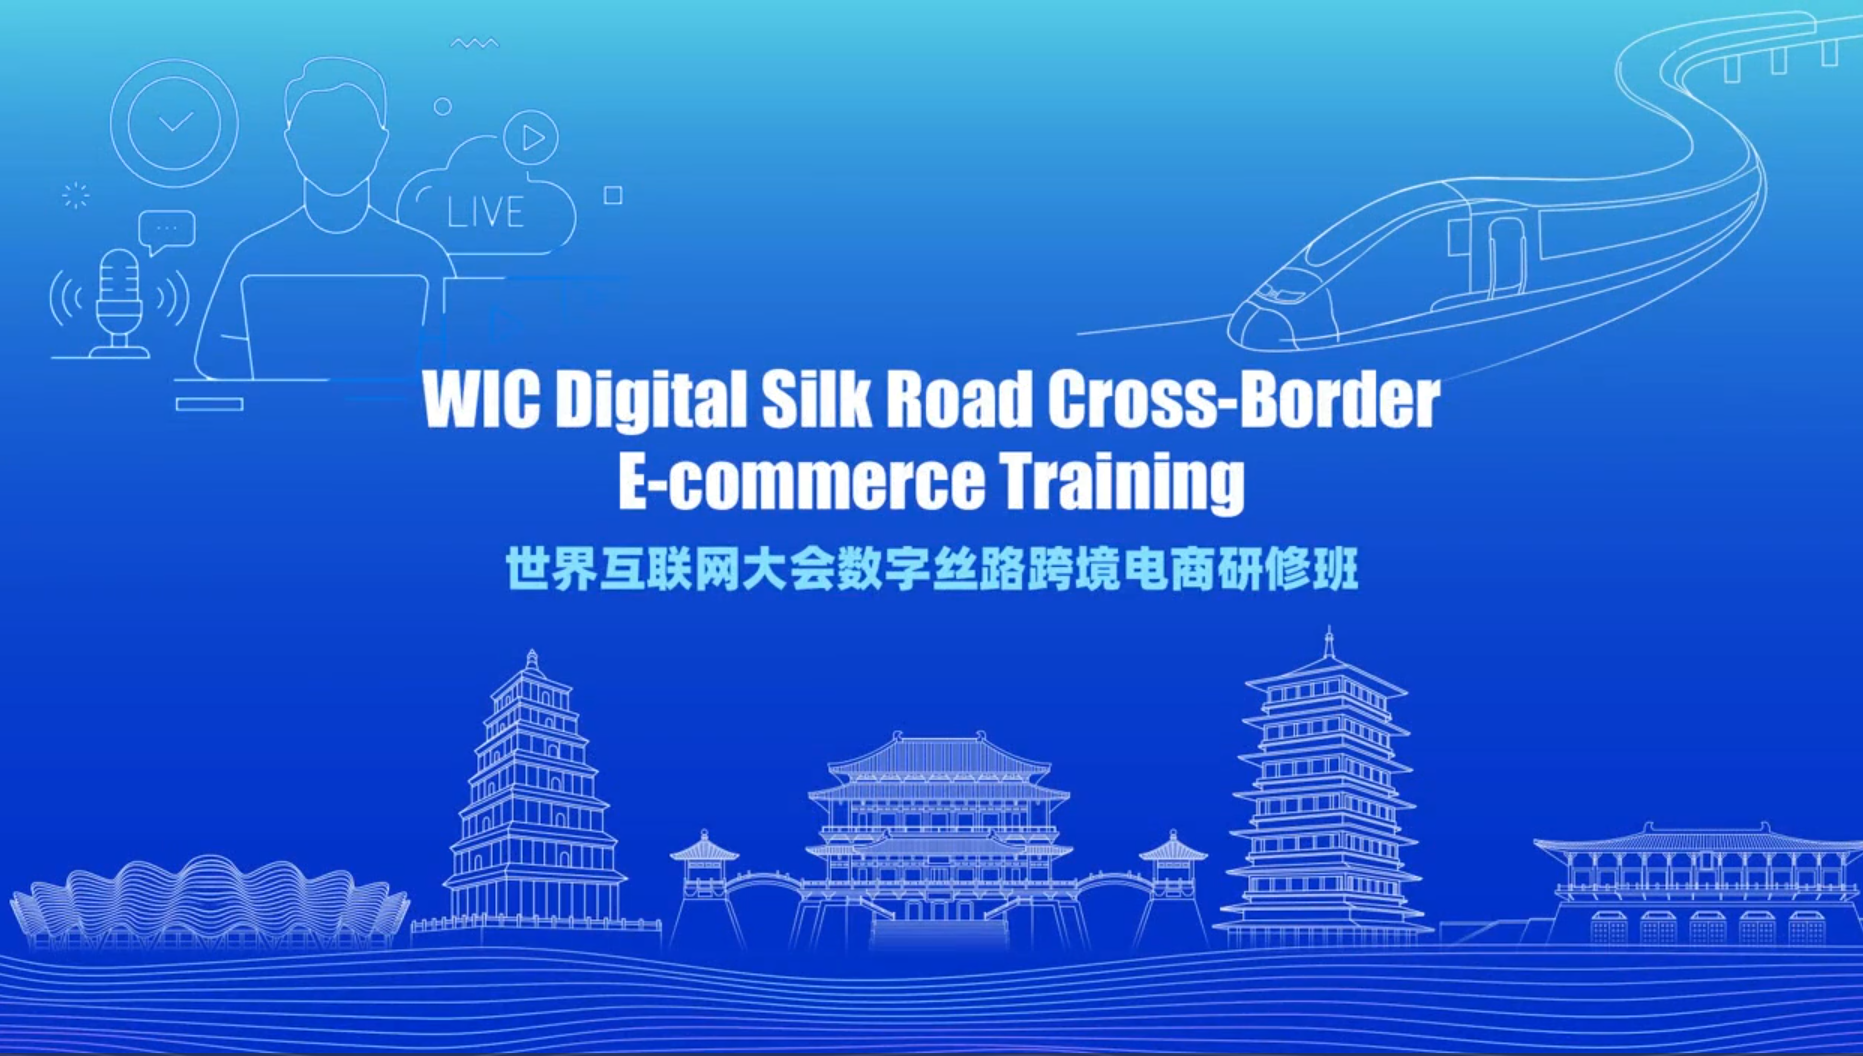 Video: WIC holds Digital Silk Road Cross-Border E-commerce Training